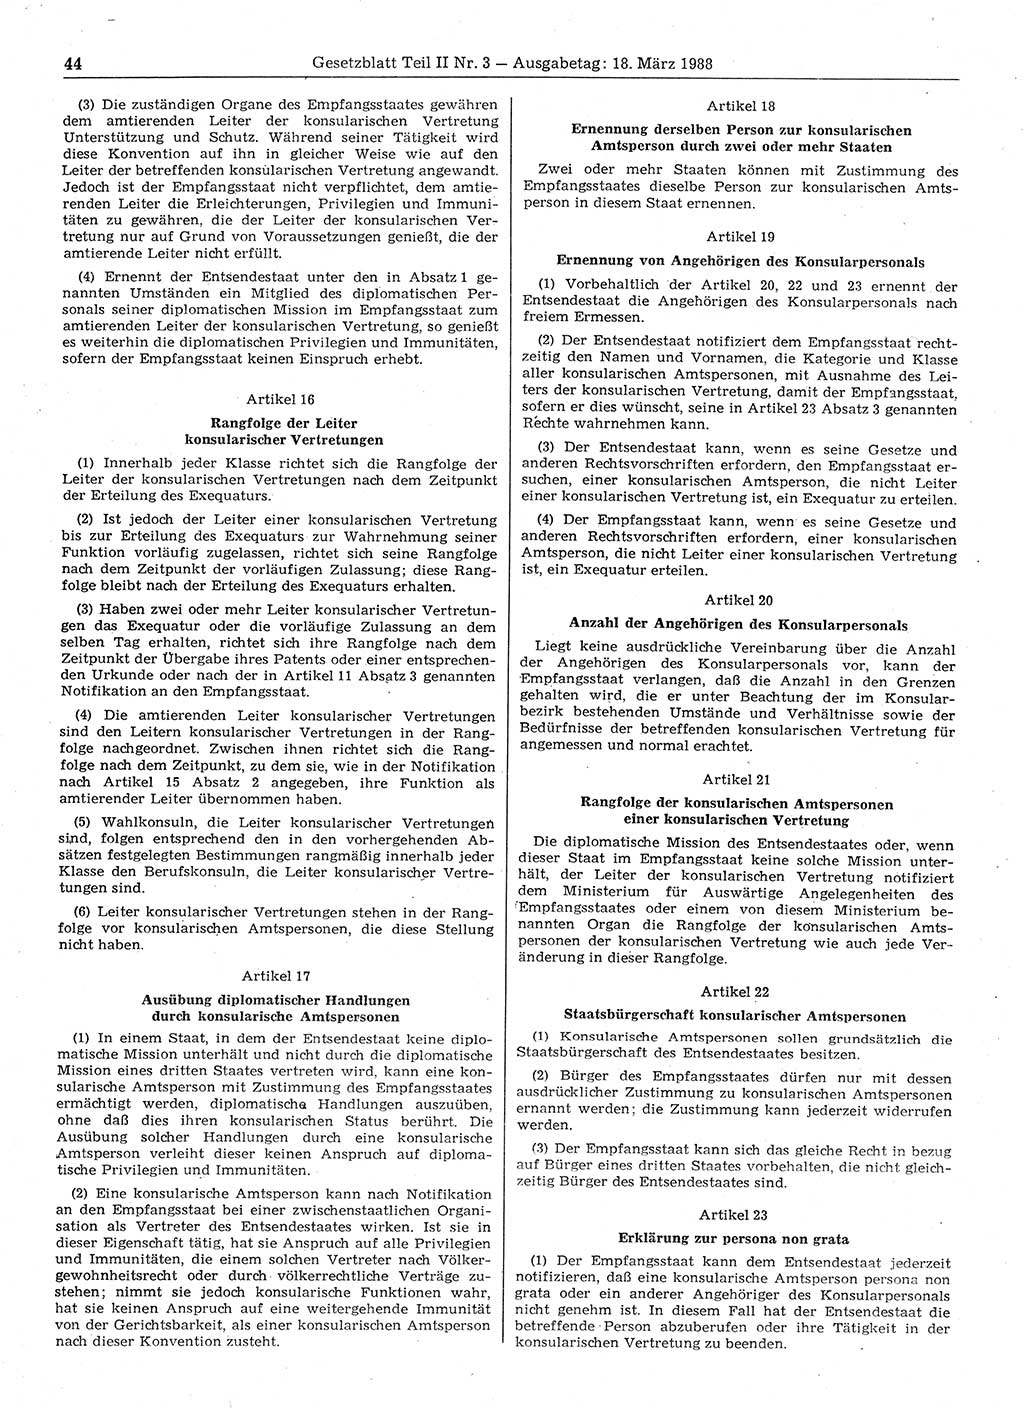 Gesetzblatt (GBl.) der Deutschen Demokratischen Republik (DDR) Teil ⅠⅠ 1988, Seite 44 (GBl. DDR ⅠⅠ 1988, S. 44)